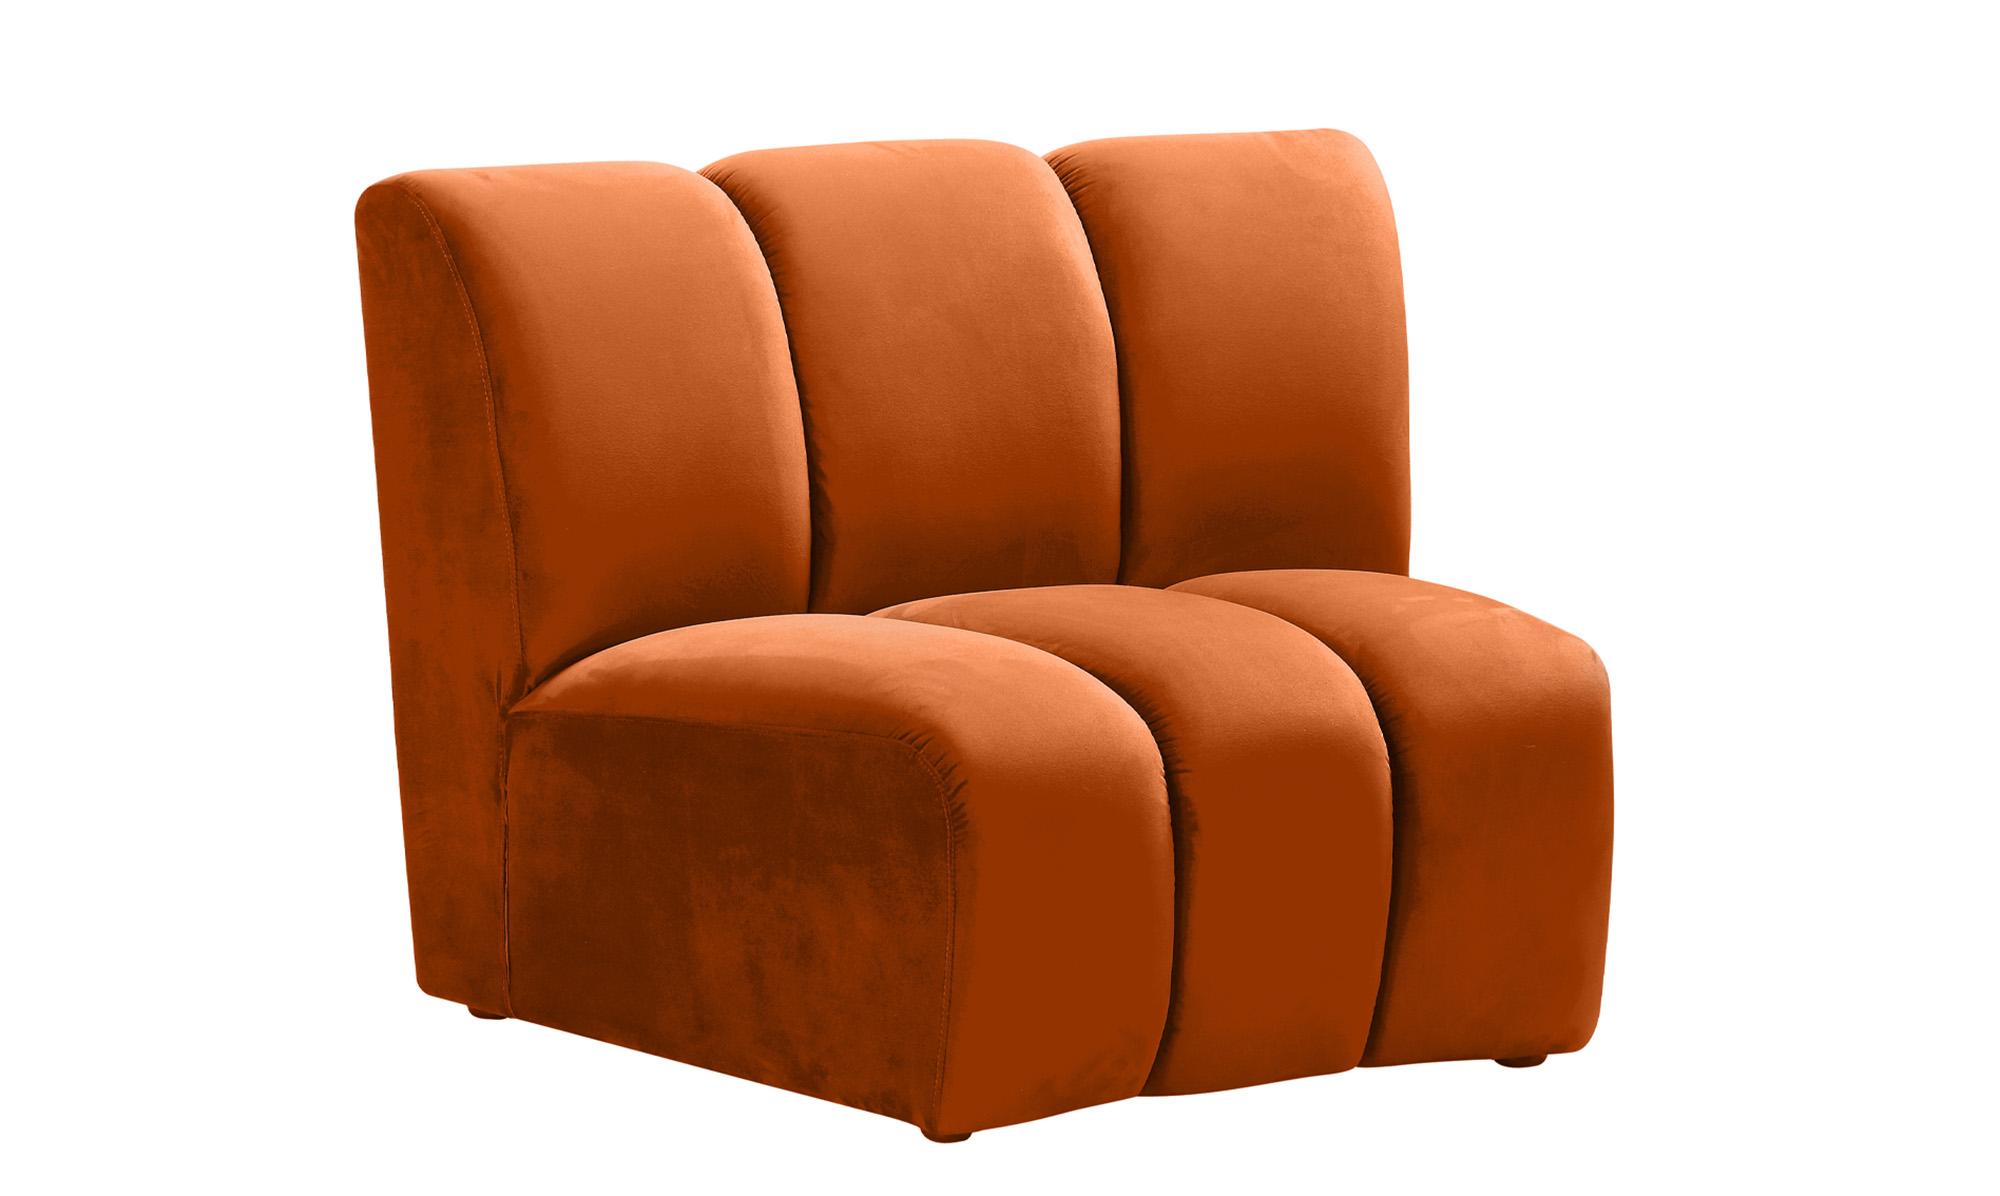 

    
638Cognac-9PC Meridian Furniture Modular Sectional Sofa
